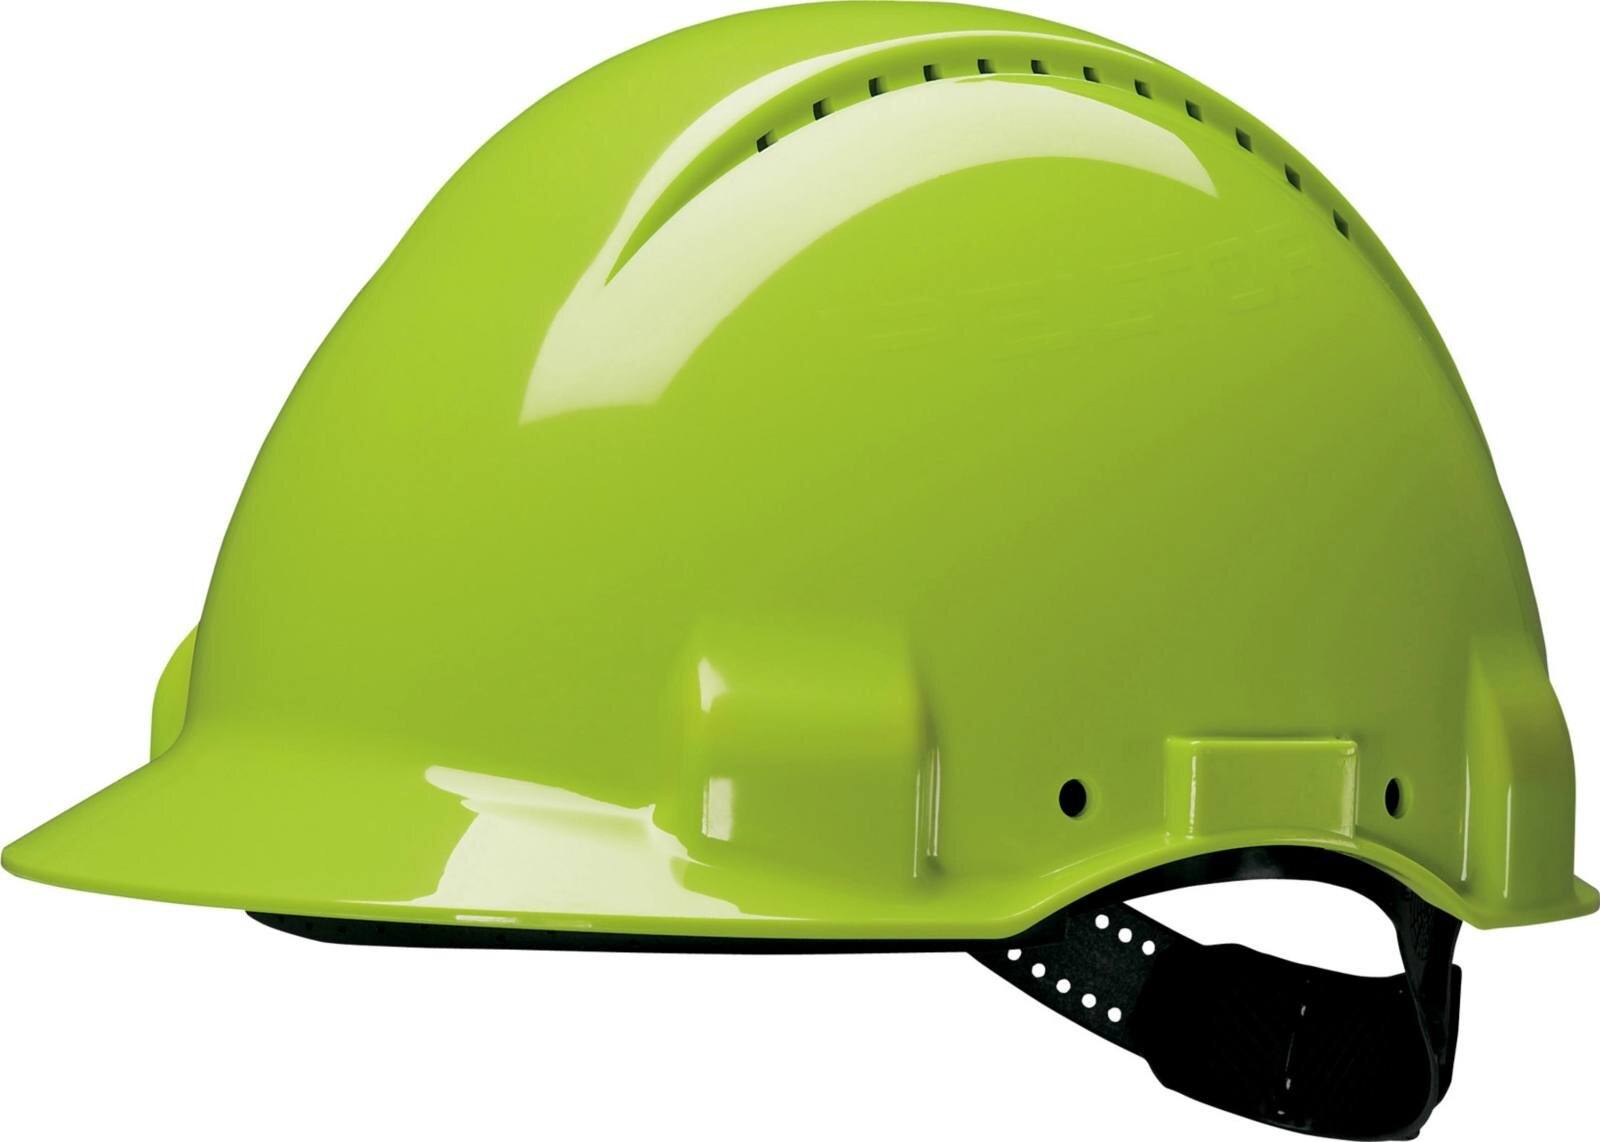 3M G3000 casque de protection G30DUV en vert fluo, ventilé, avec Uvicator, Pinlock et bande de transpiration en cuir